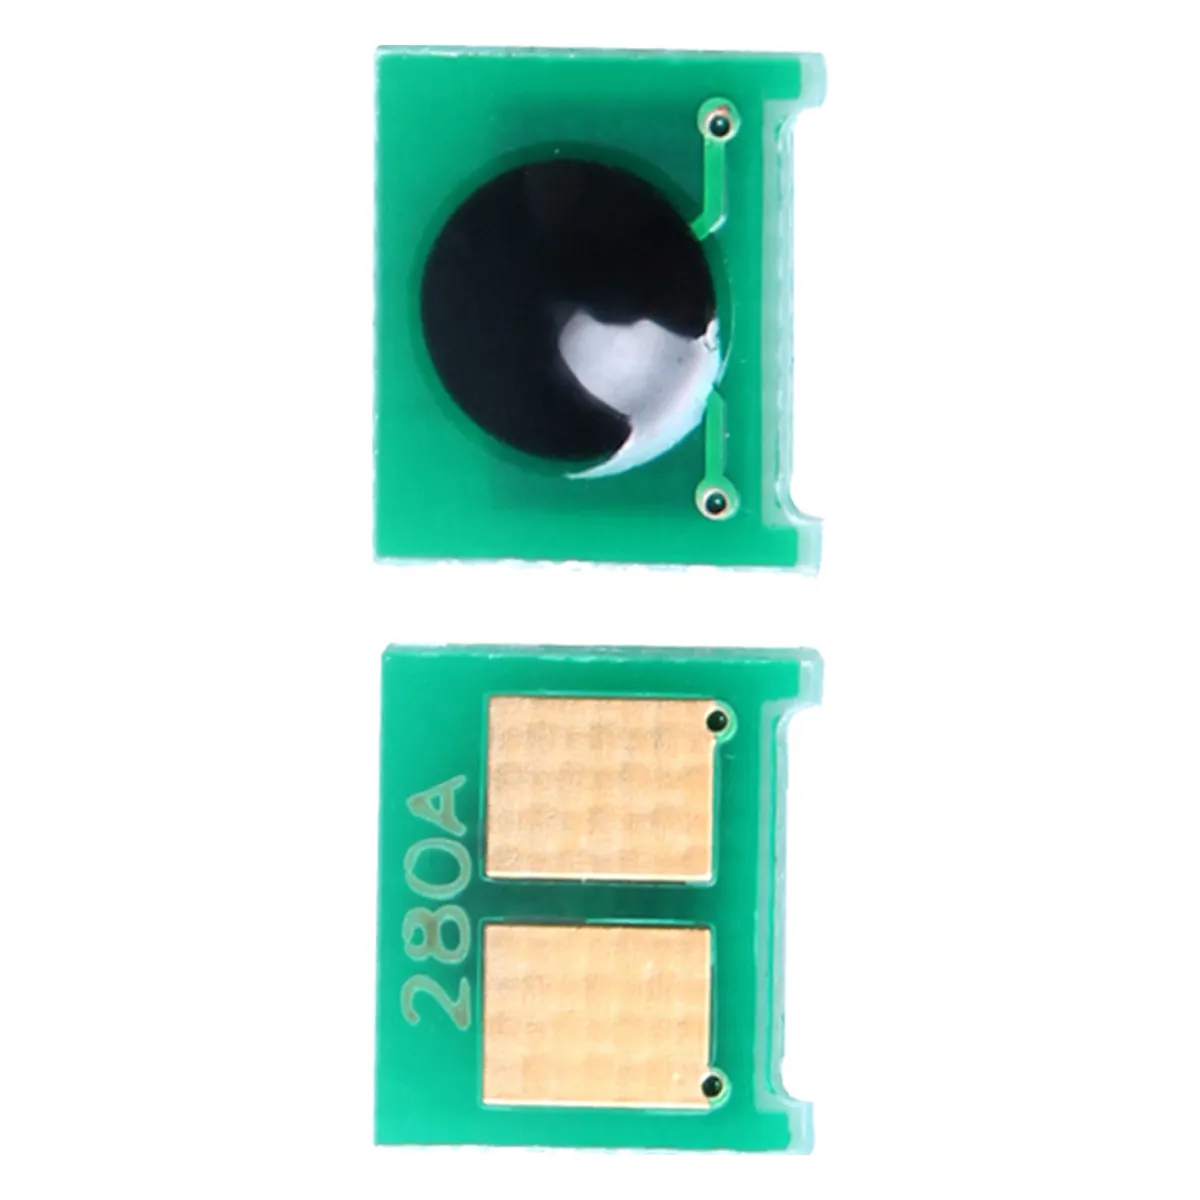 Vendita calda! Chip al miglior prezzo per chip di ripristino toner CE285A per HP P1102/1102W/M1132 /1212nf/1214nfh/1217nfw chip per stampante laserjet